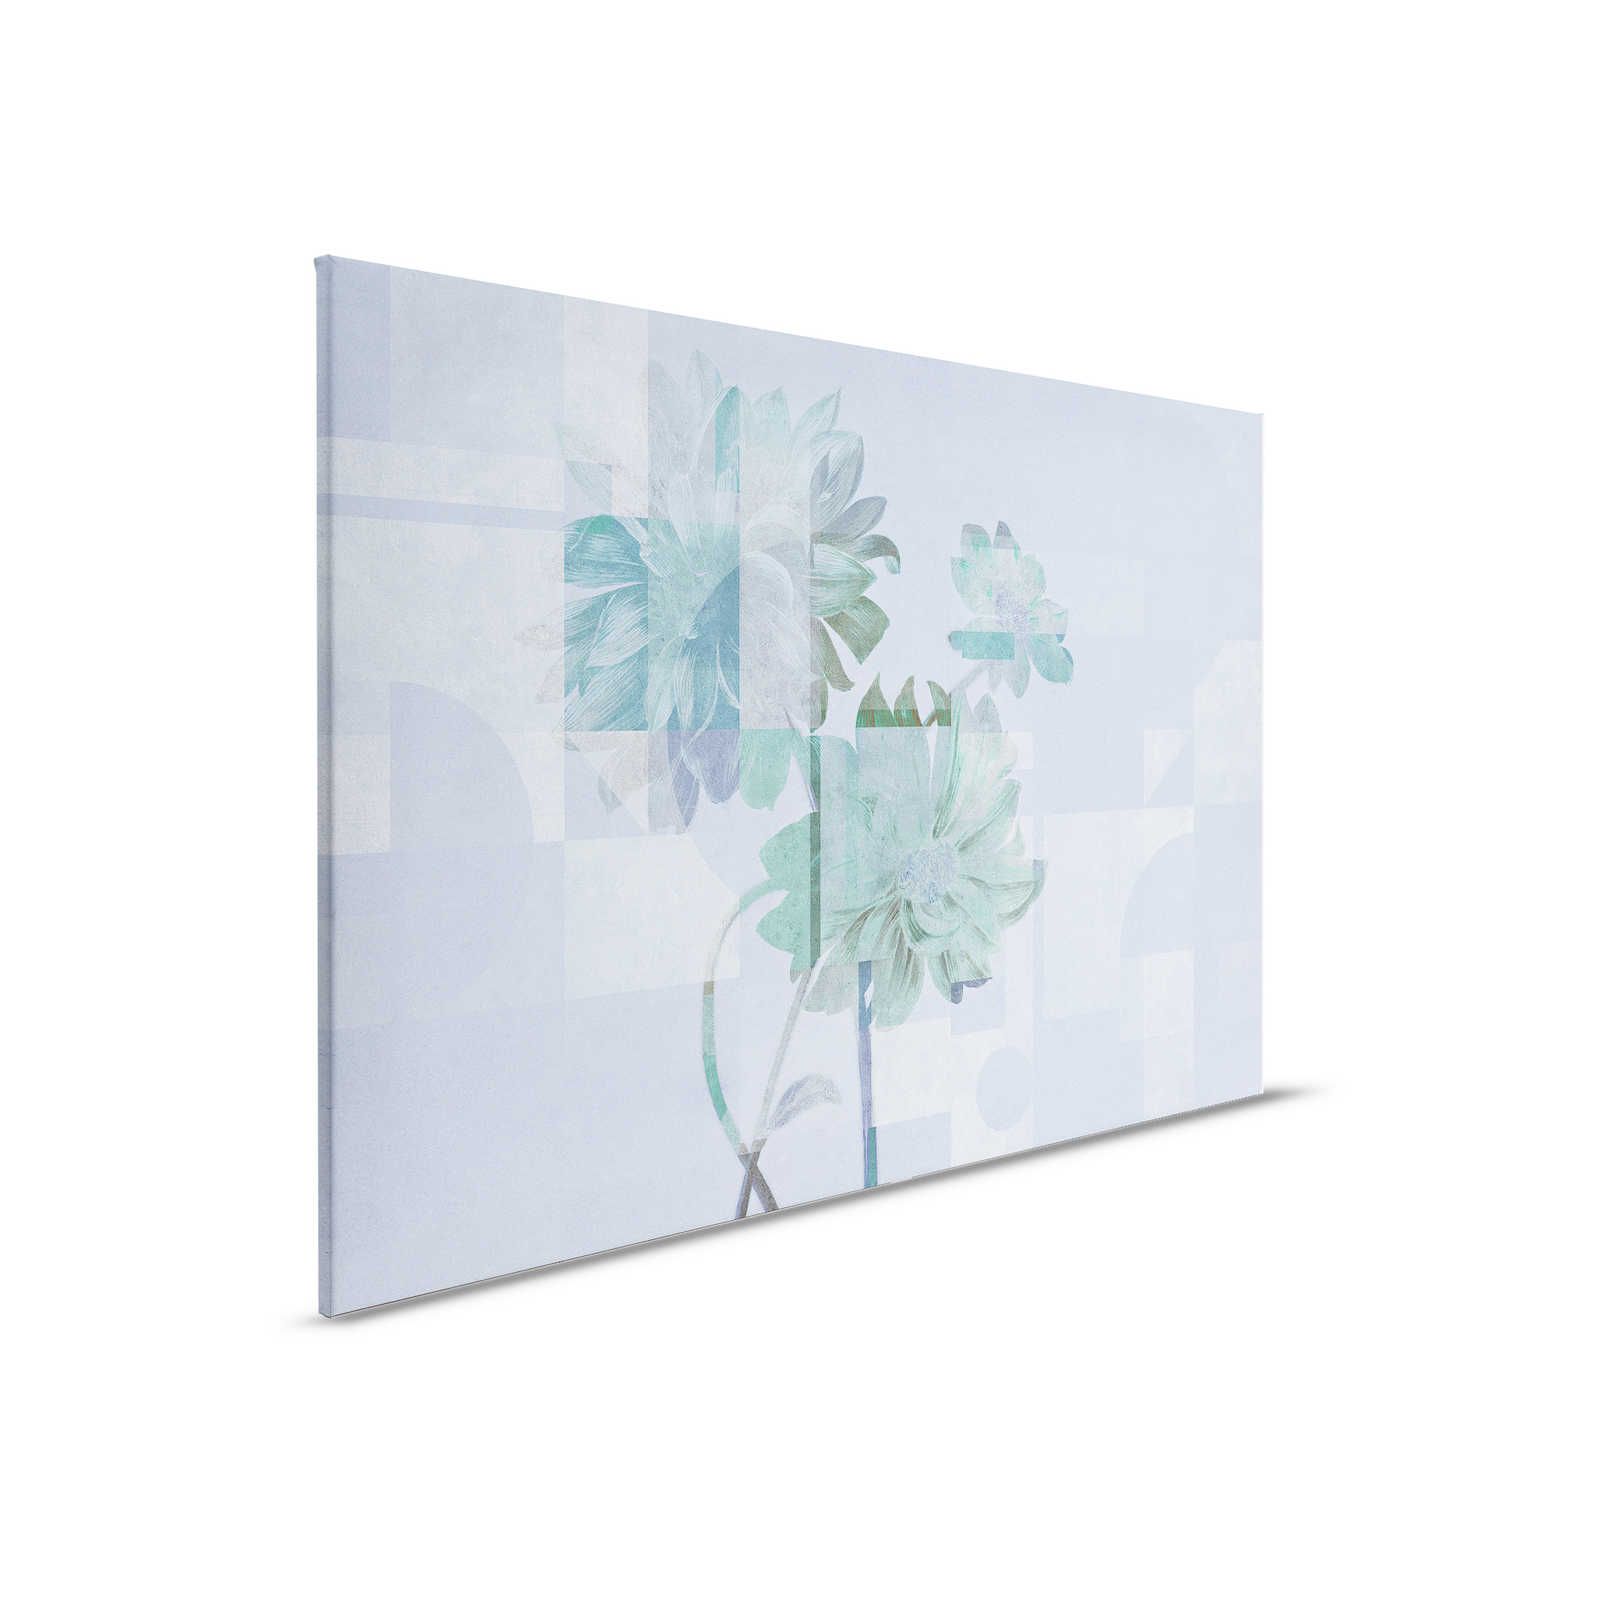 Queens Garden 1 - Quadro su tela con fiori, margherite blu e motivo grafico - 0,90 m x 0,60 m
